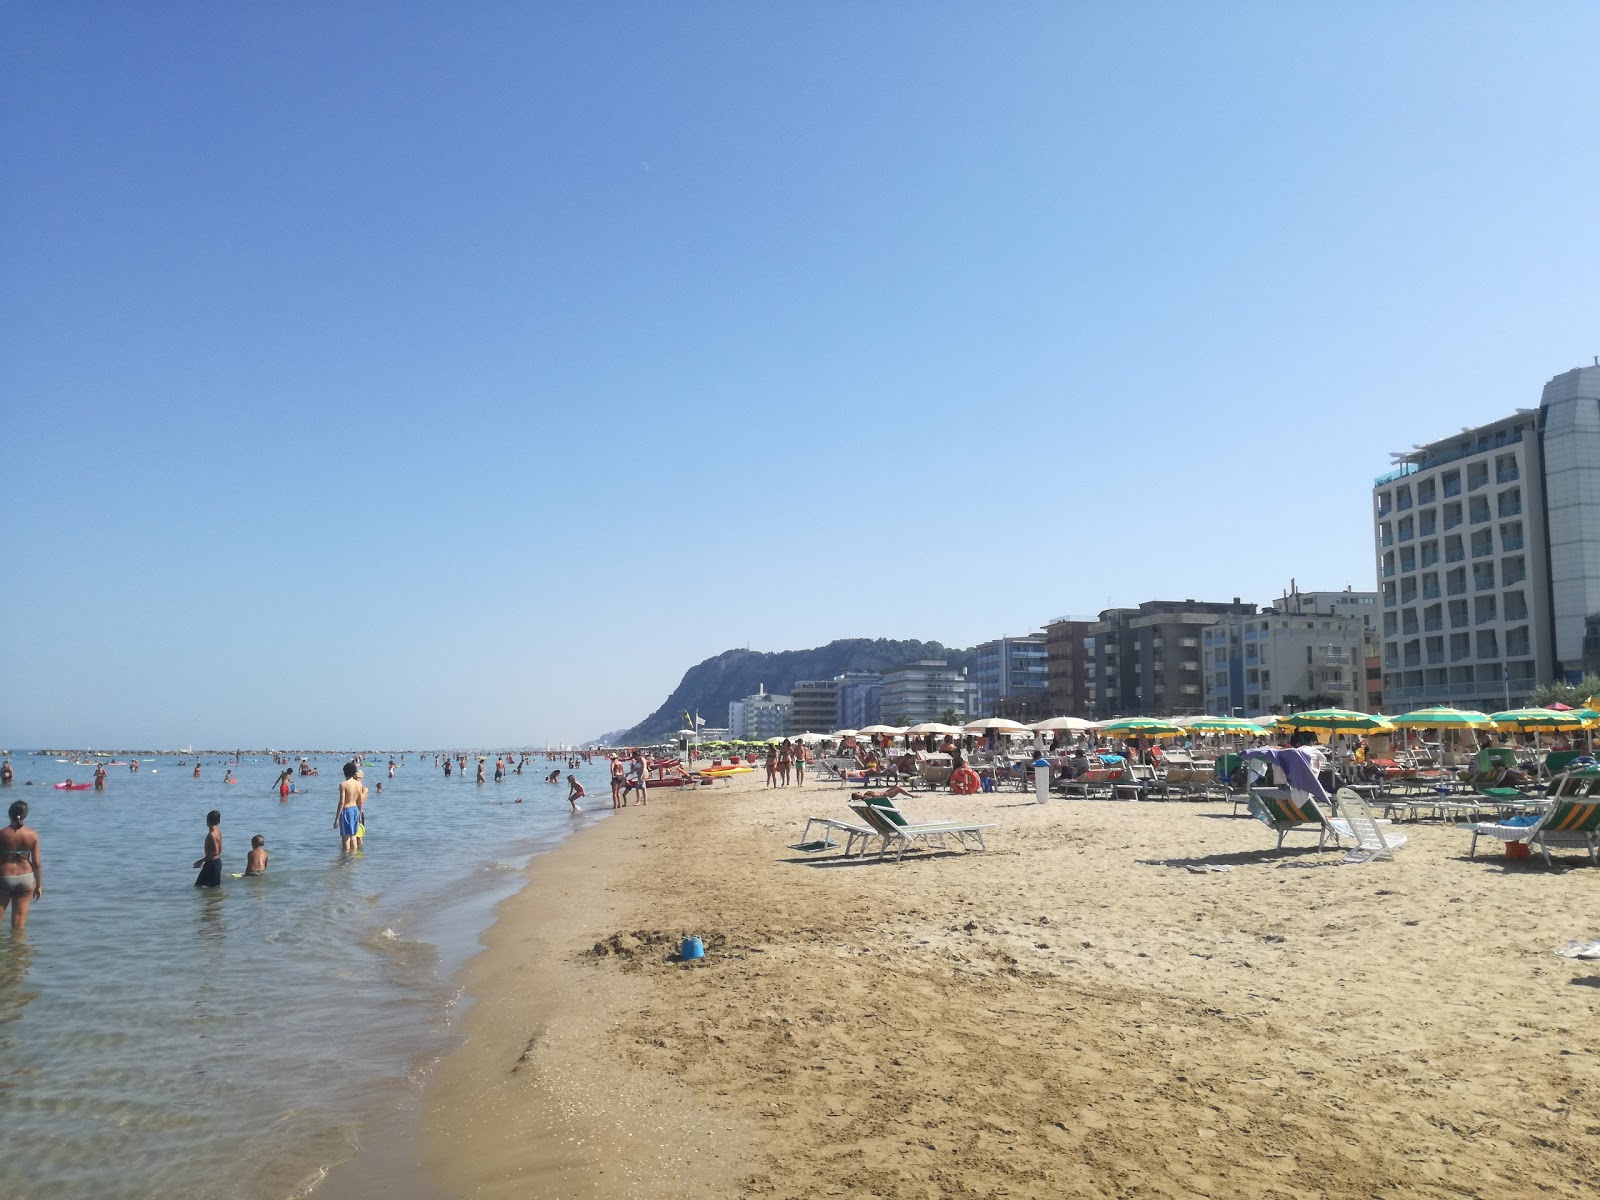 Fotografie cu Pesaro beach cu nivelul de curățenie înalt